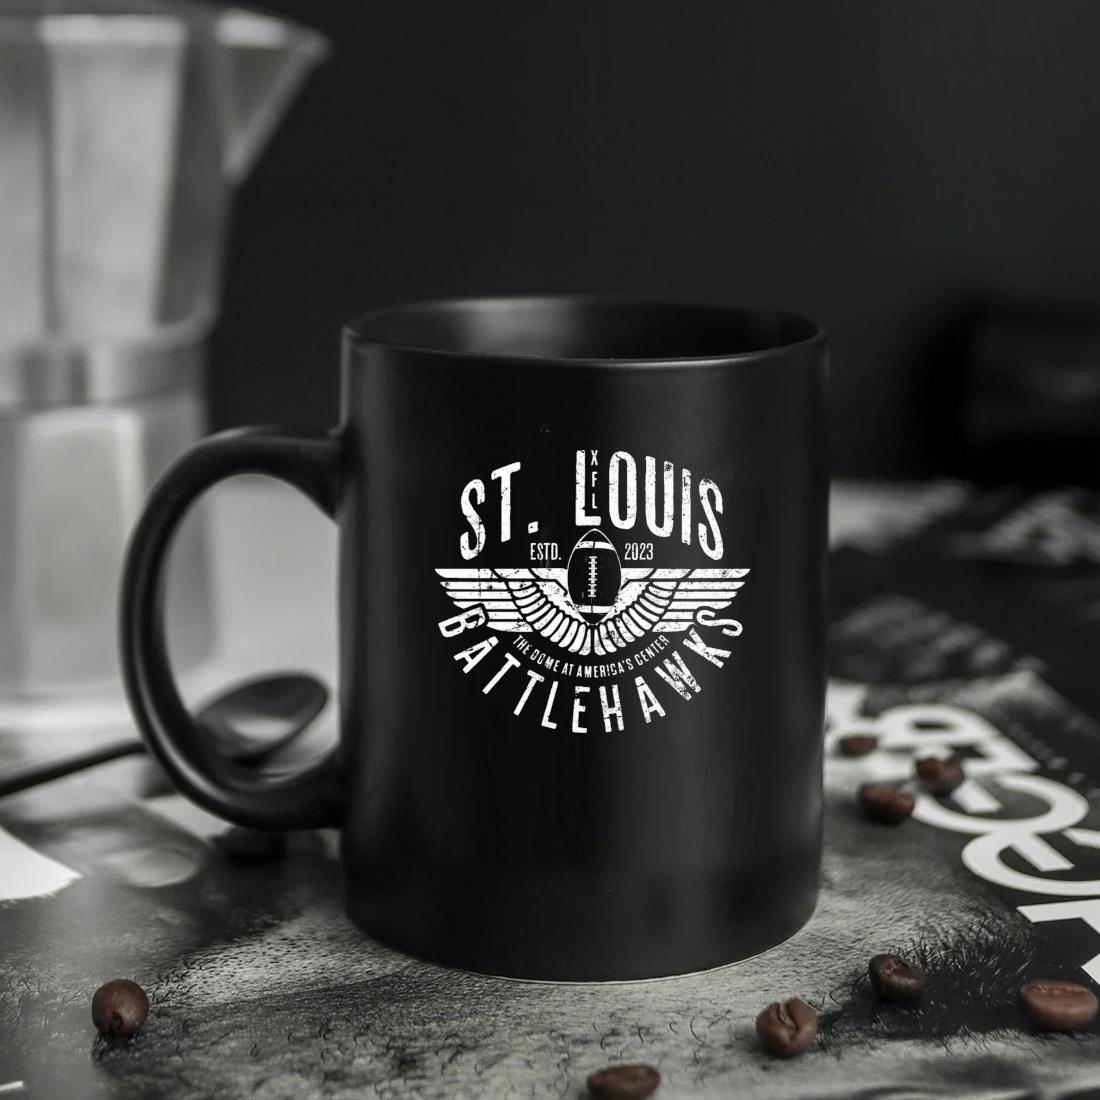 St. Louis Battlehawks 2023 Mug ten